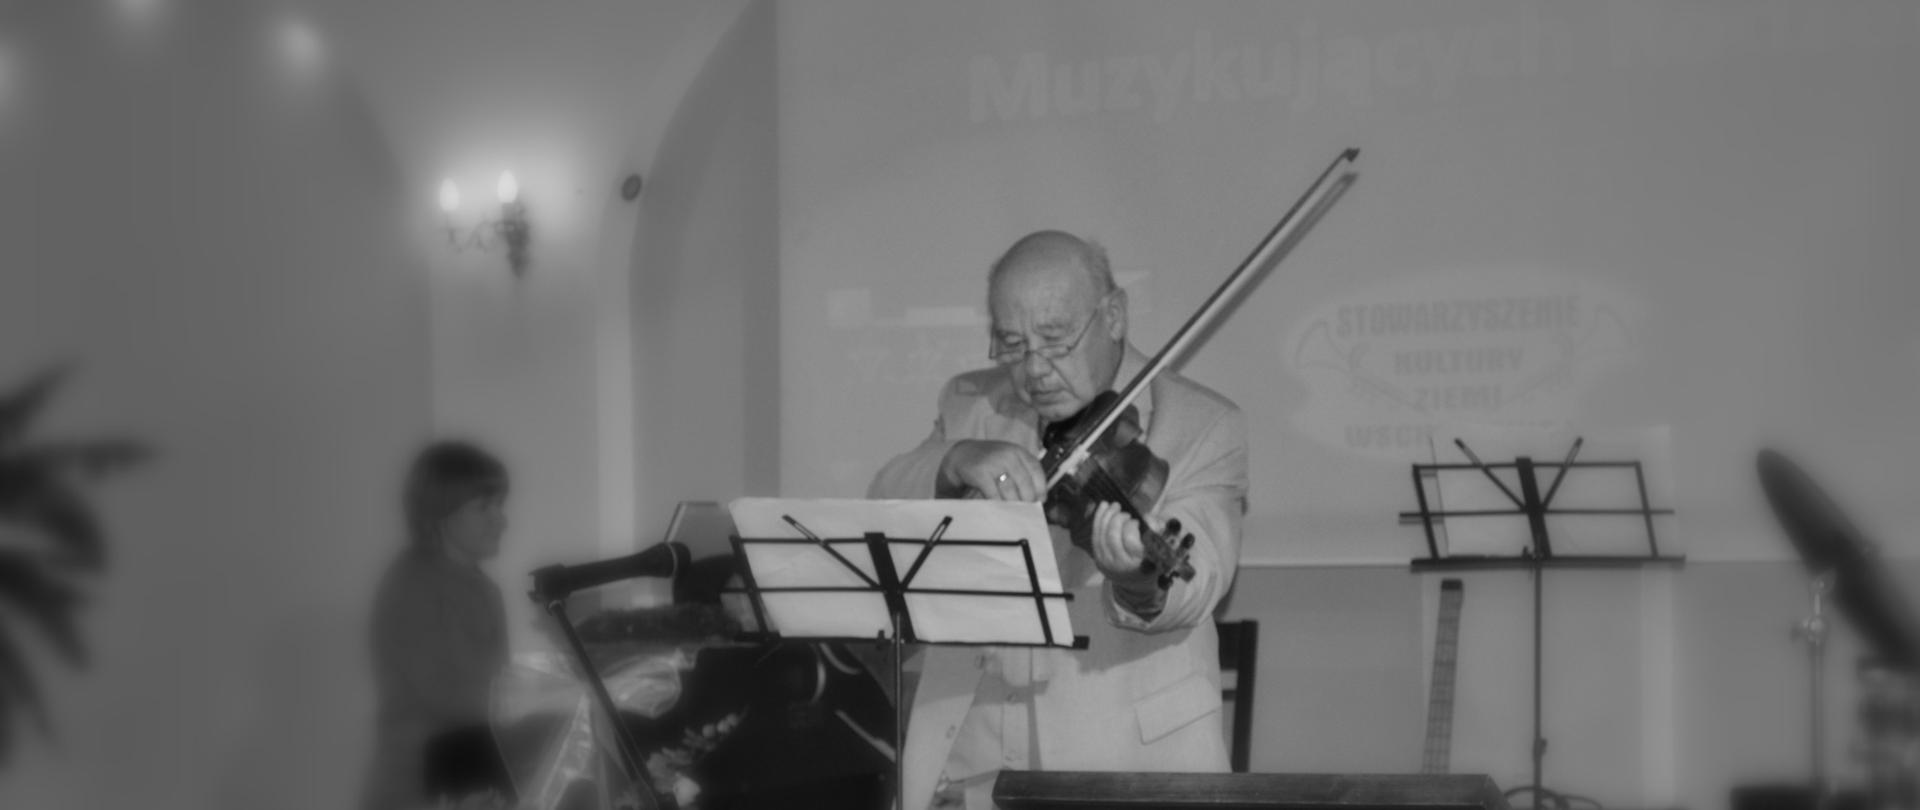 Na zdjęciu widoczny jest Pan Karol Muszkieta grający na skrzypcach. Zdjęcie jest czarno-białe.